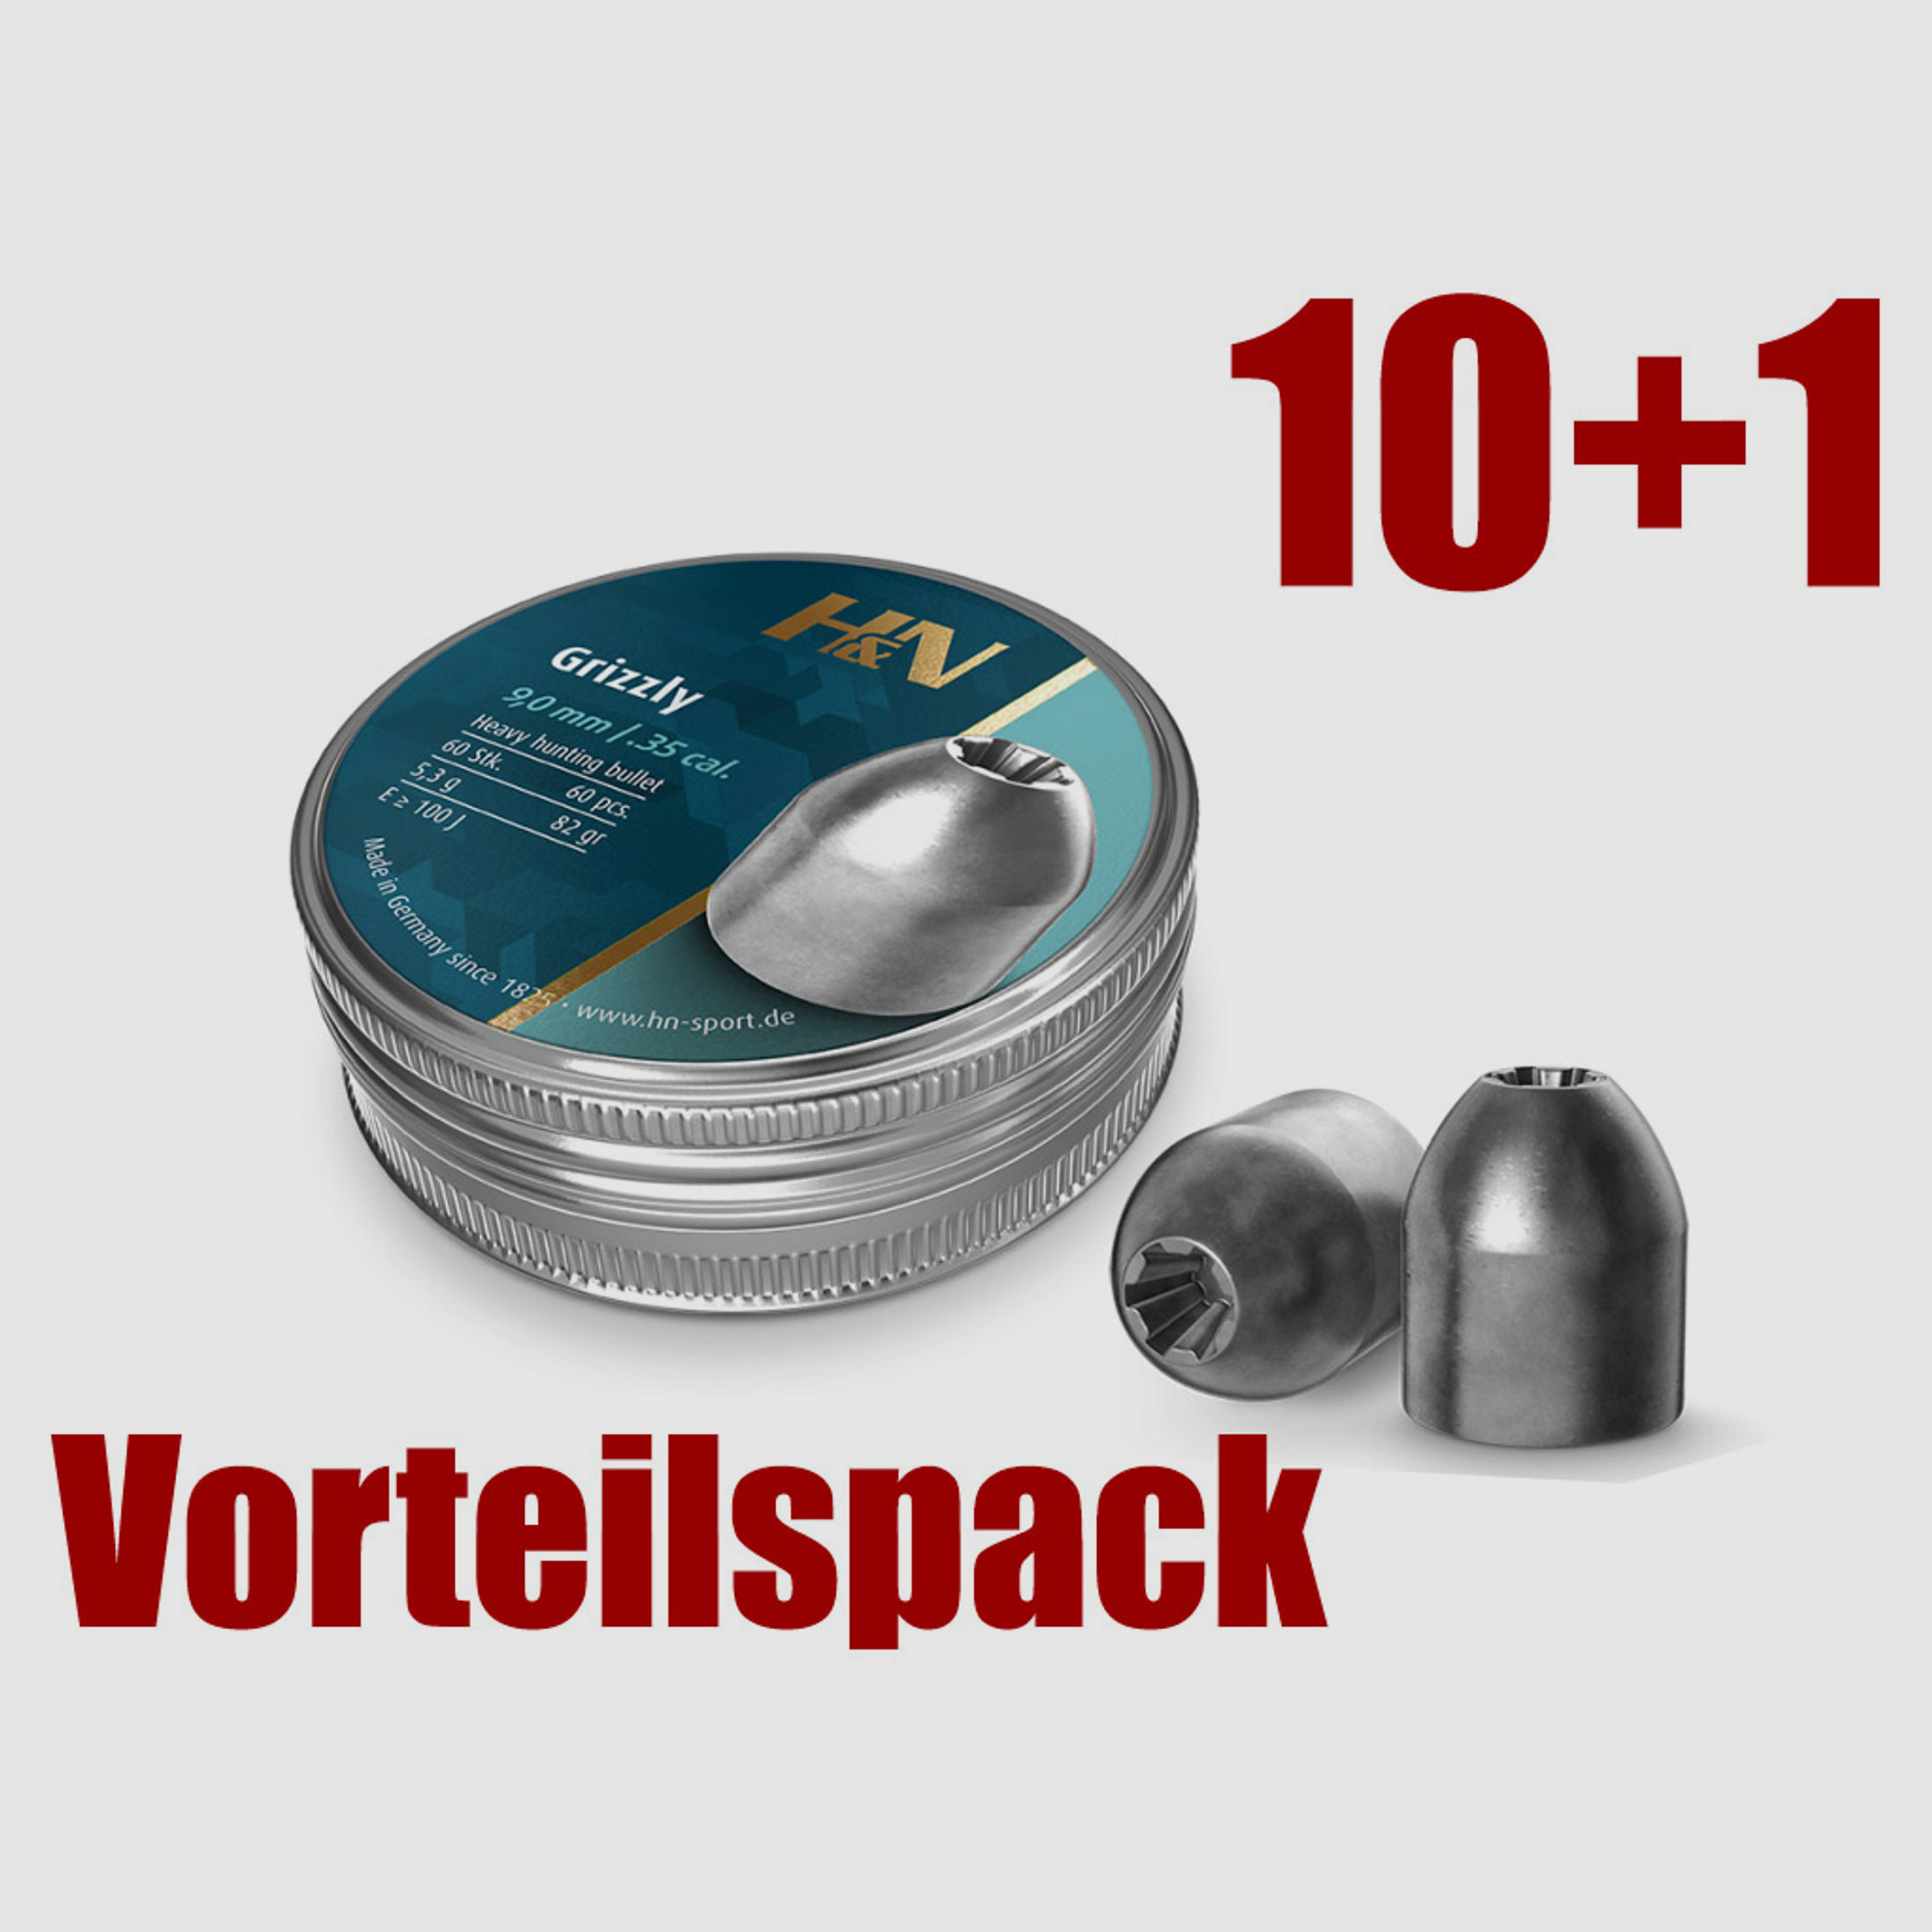 Vorteilspack 10+1 Hohlspitz Diabolos H&N Grizzly Jagdgeschoss Kaliber 9 mm 5,3 g glatt 11 x 60 StĂĽck